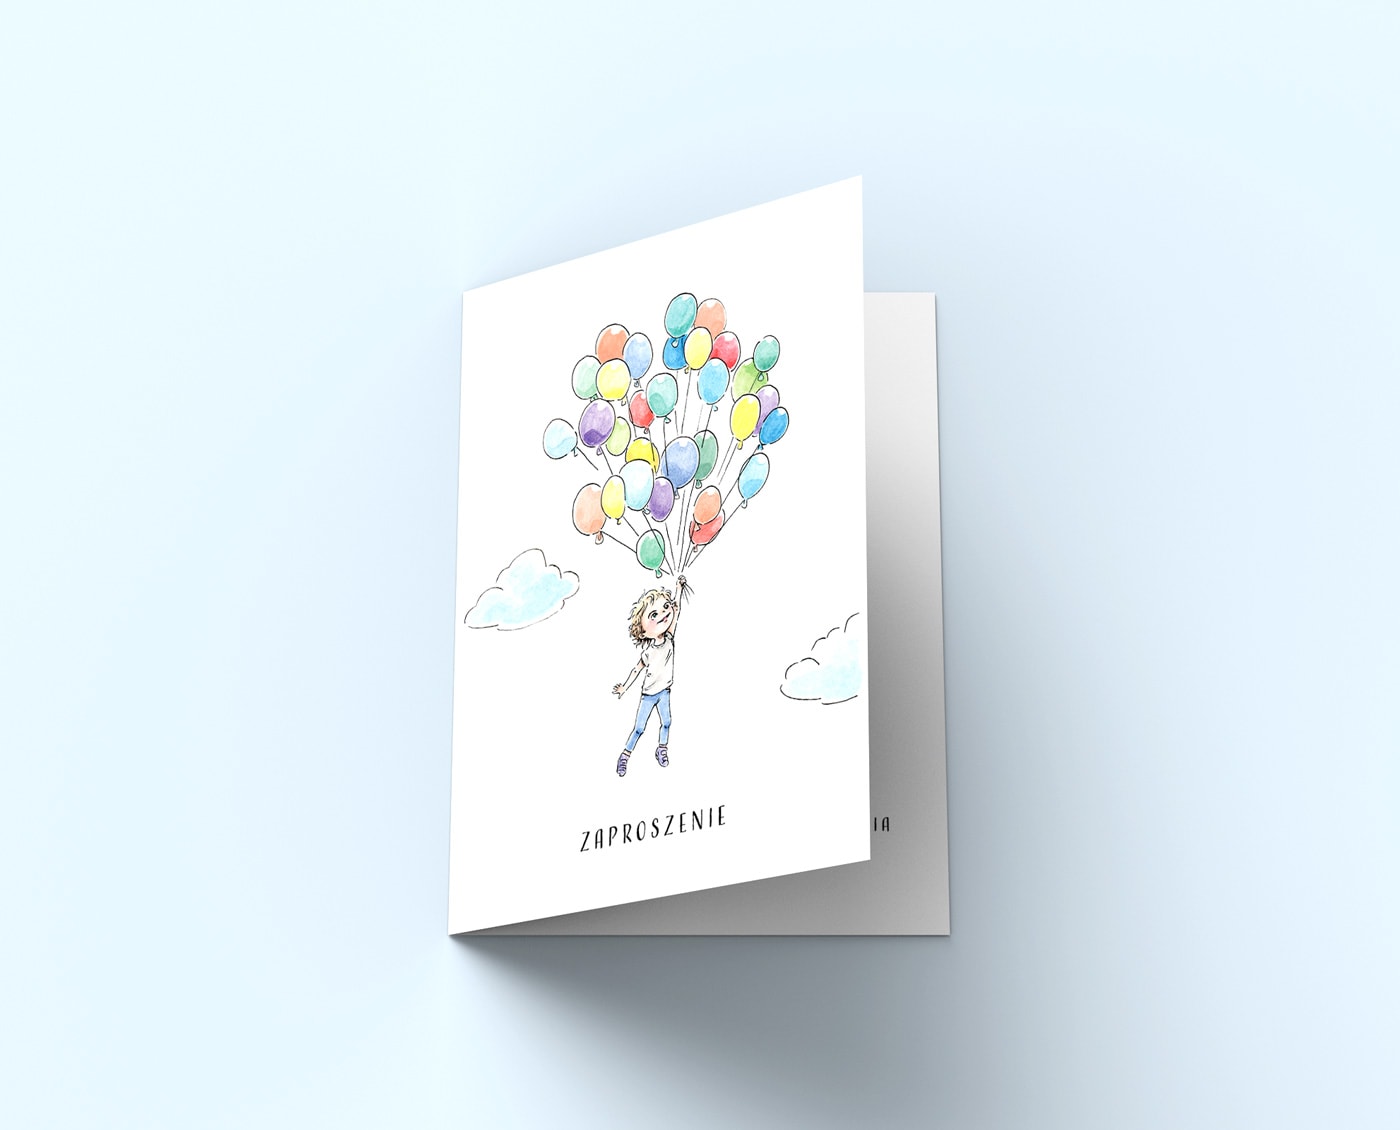 Zaproszenie z lecącym chłopcem trzymającym baloniki